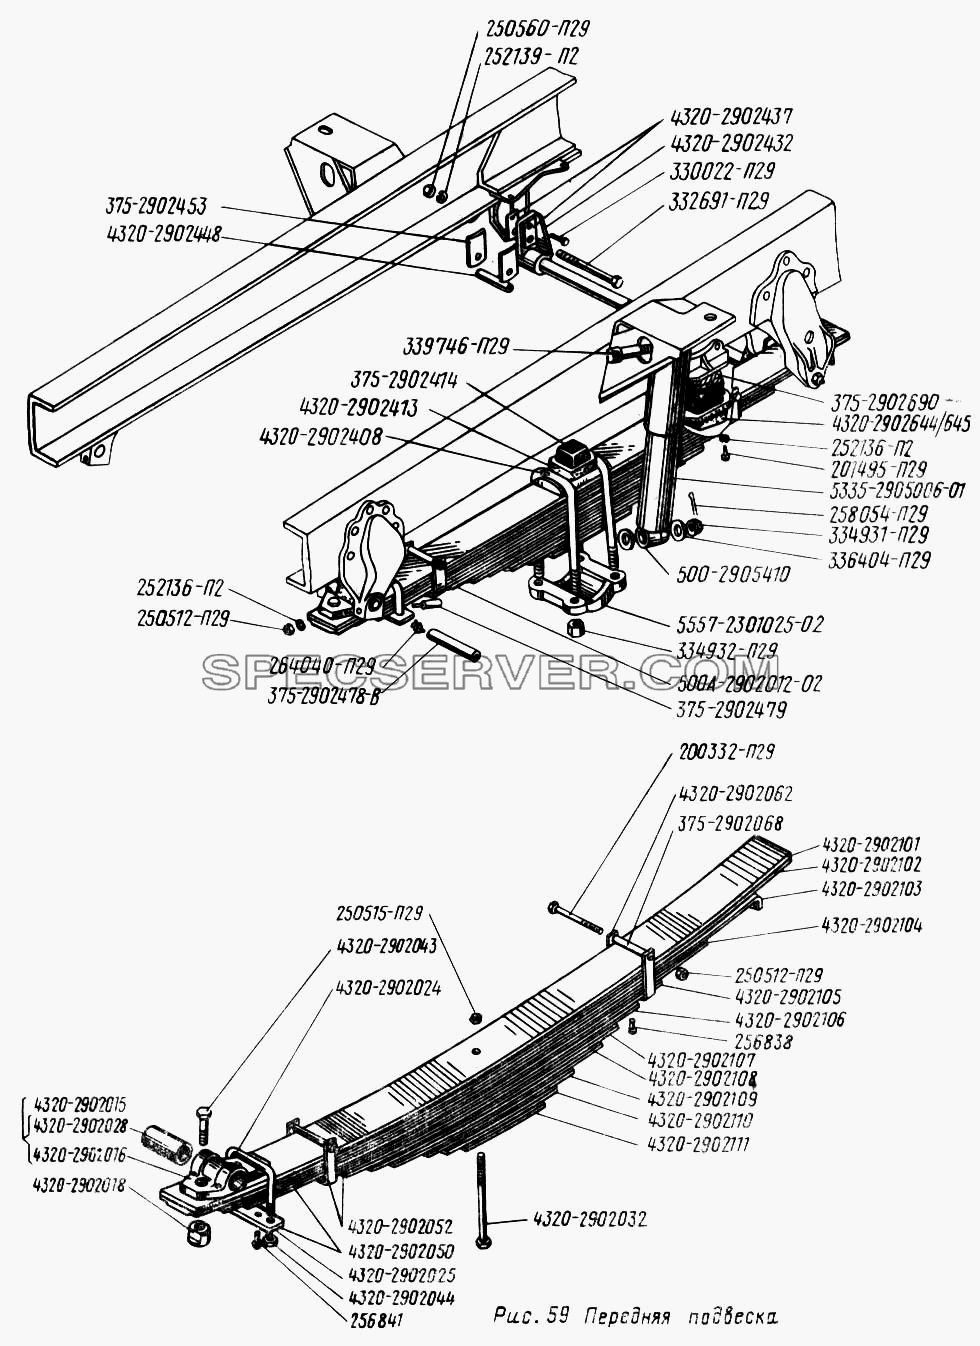 Передняя подвеска для Урал-43202 (список запасных частей)